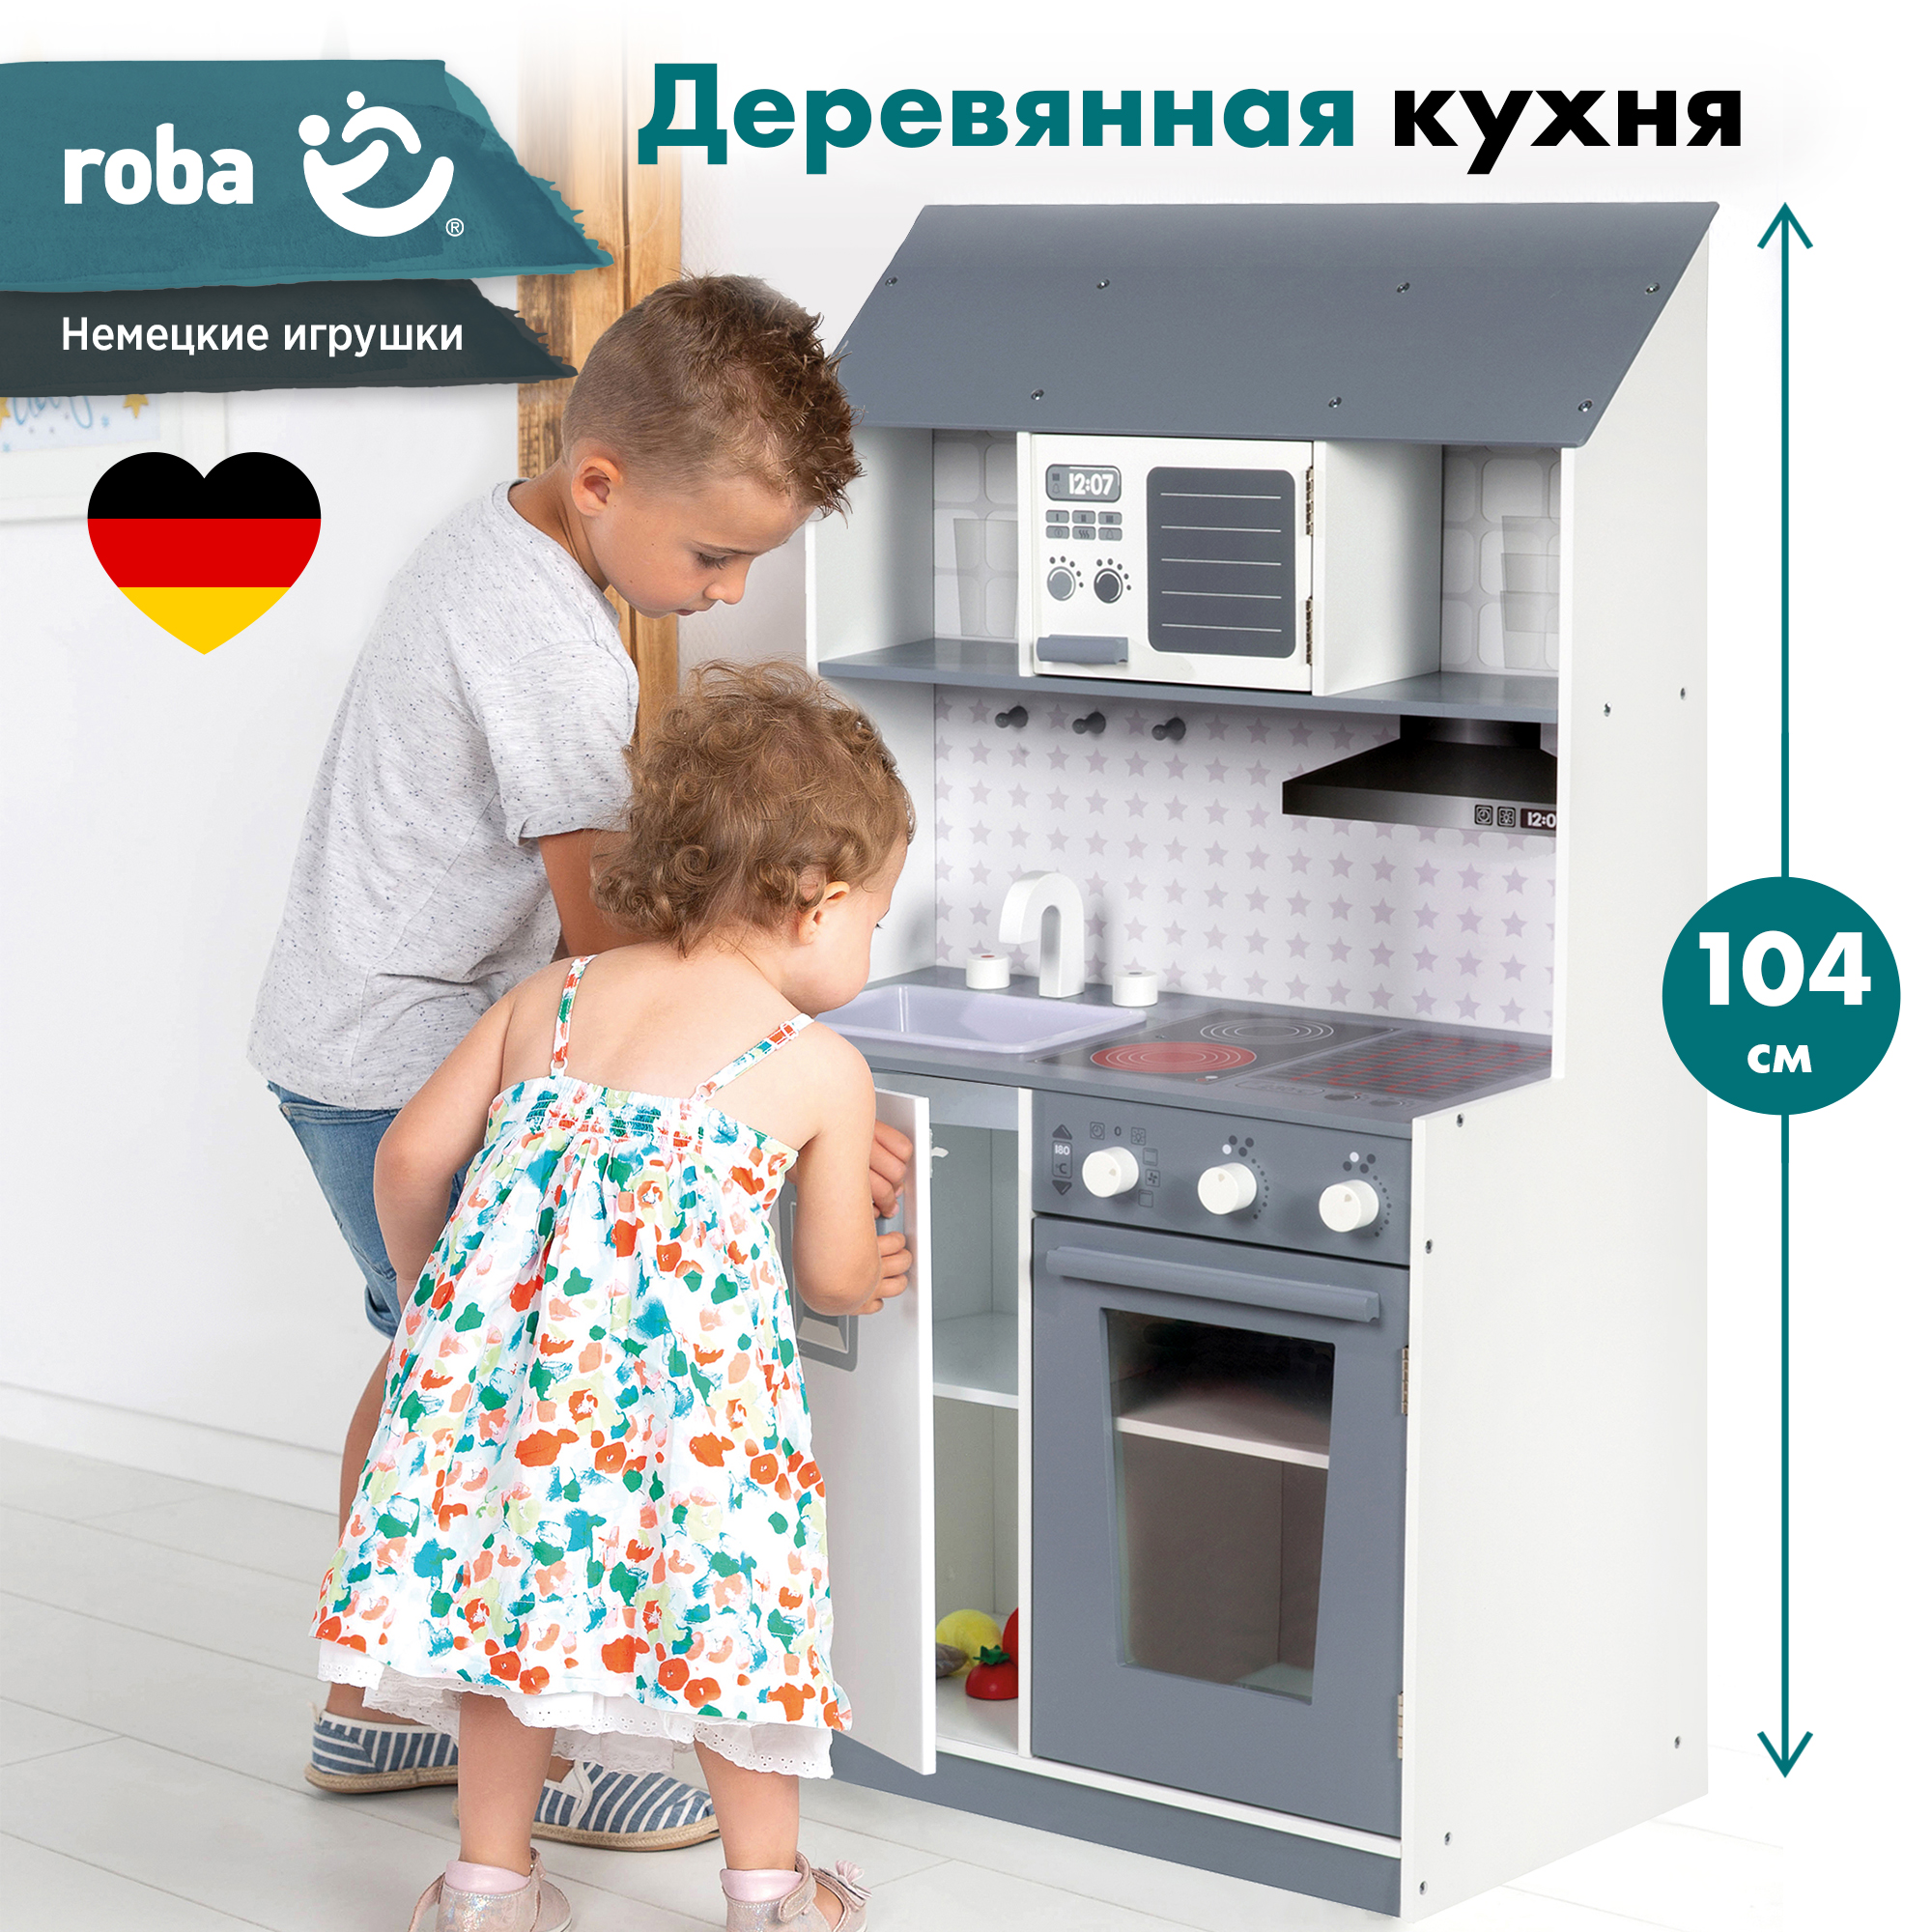 Кухня детская игровая Roba кухонный гарнитур: раковина, кран, СВЧ печь, плита, холодильник roba скамья детская